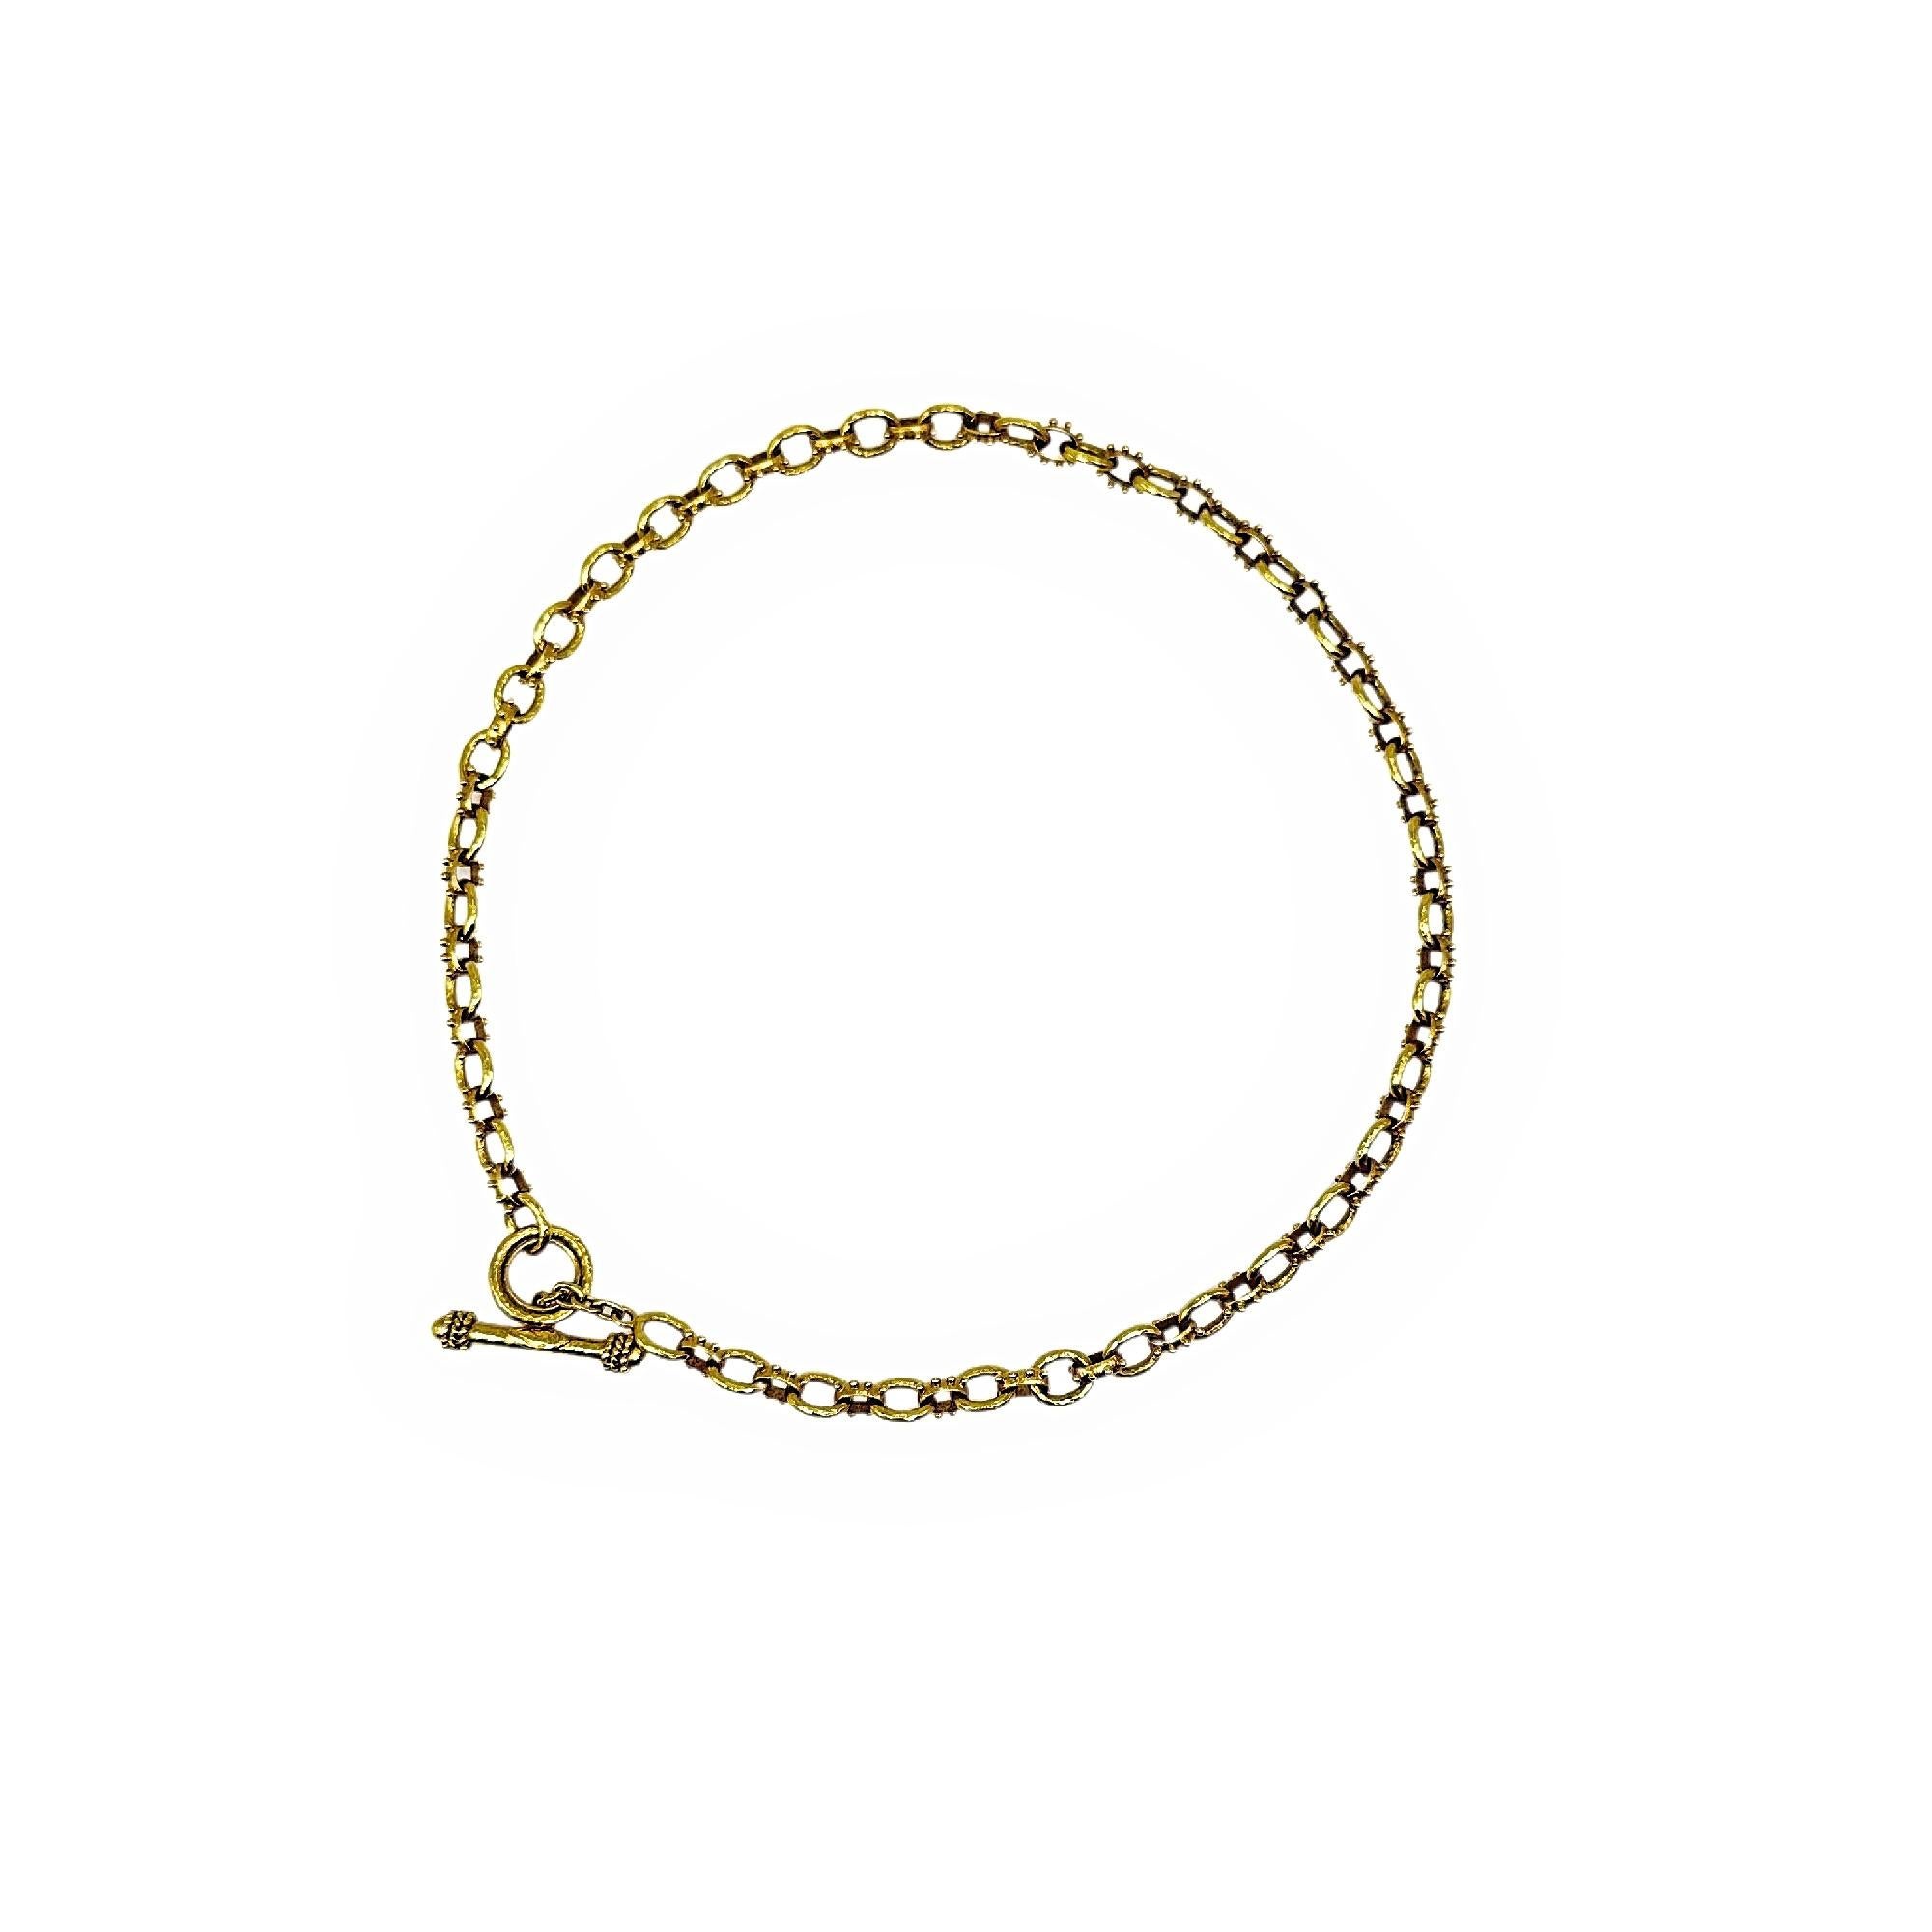 Elizabeth Locke Spiked Link Hammered Gold Toggle Necklace 19k YG For Sale 1